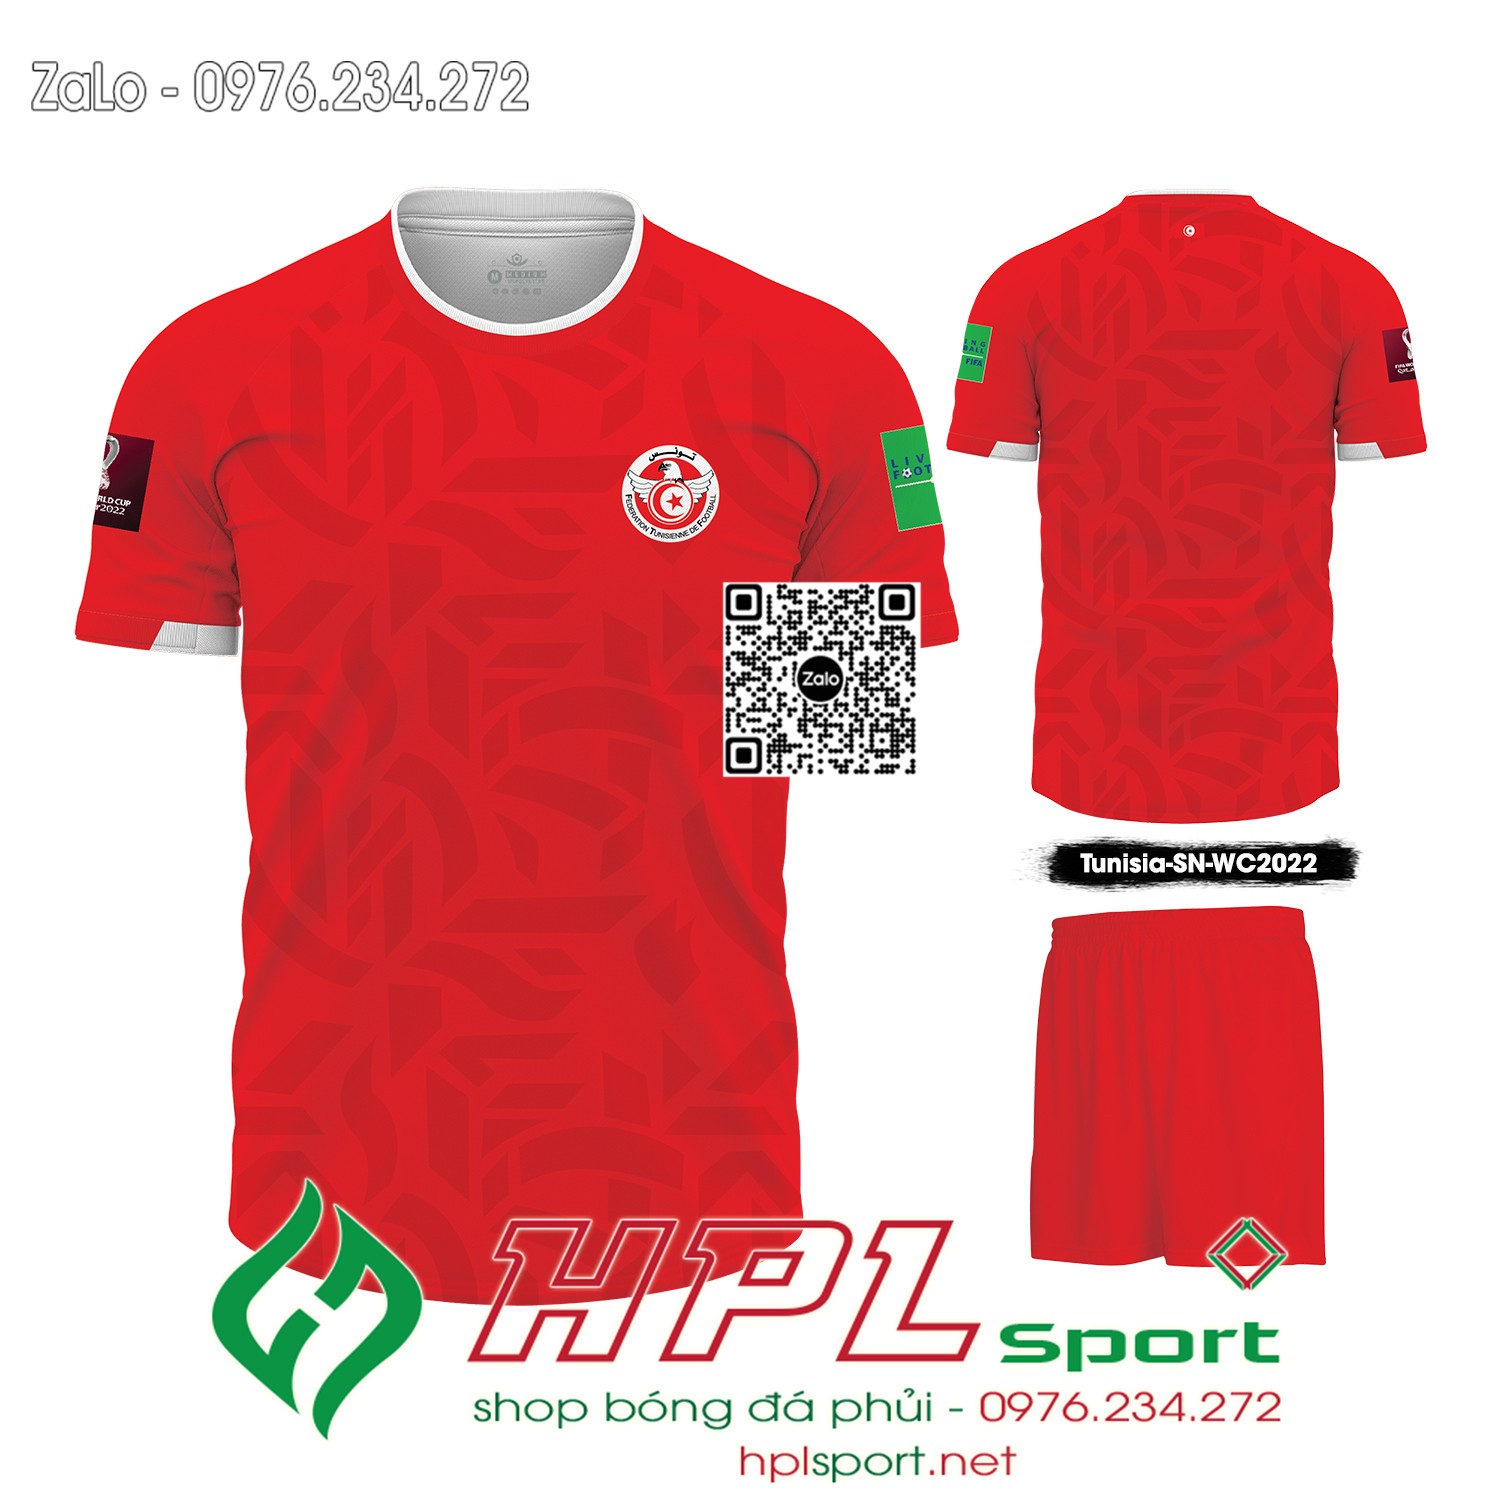 Mẫu áo đấu đội tuyển Tunisia sân nhà màu đỏ